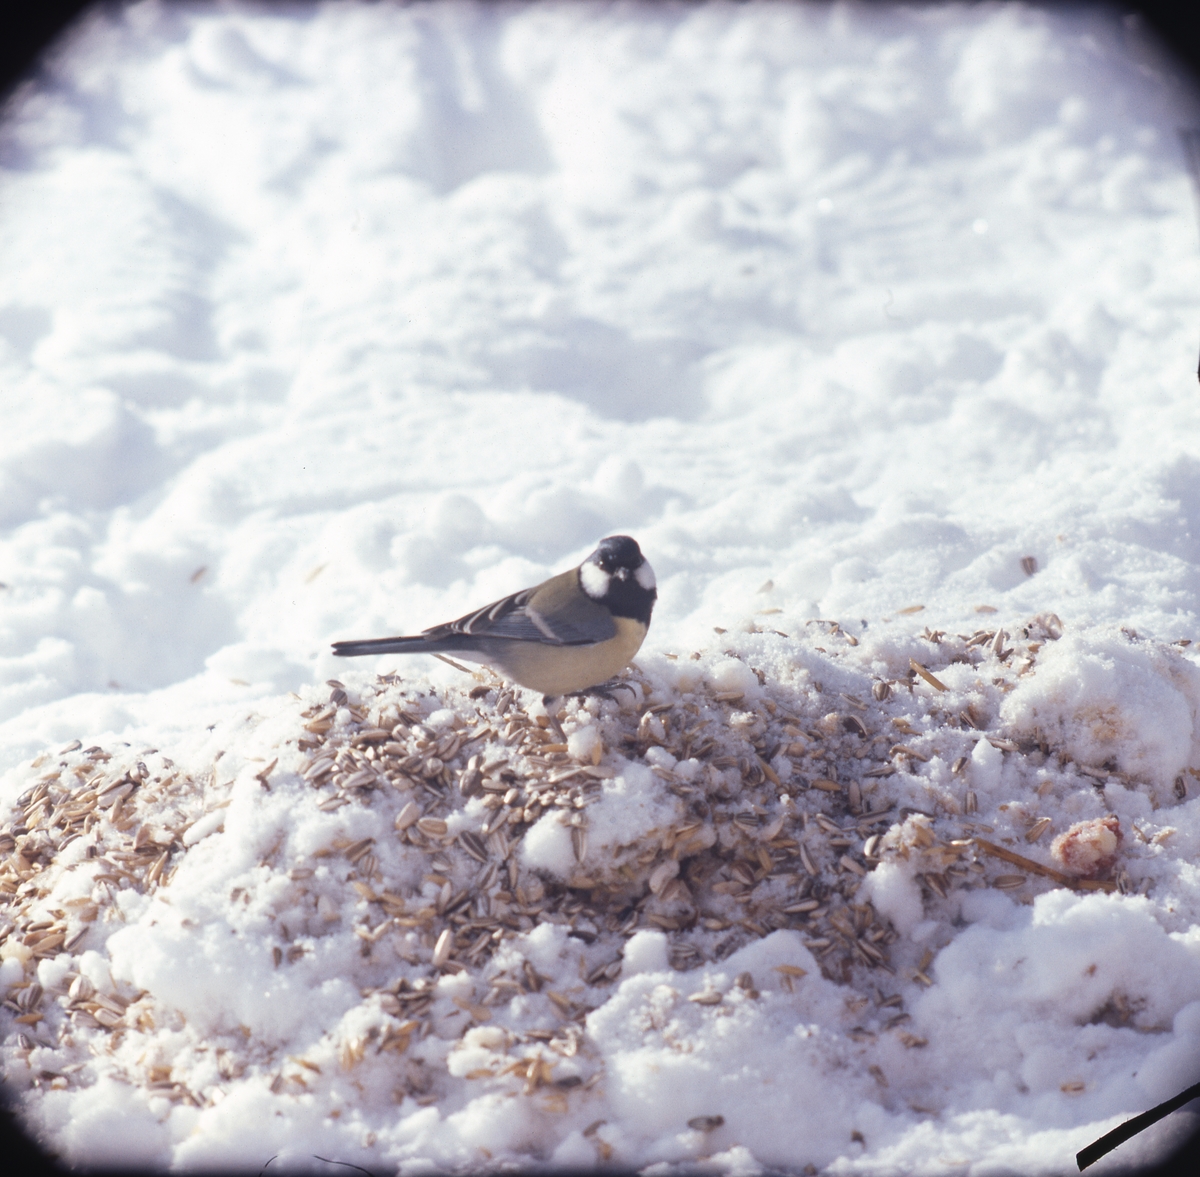 En talgoxe sitter på snöig mark och äter fågelfrön.